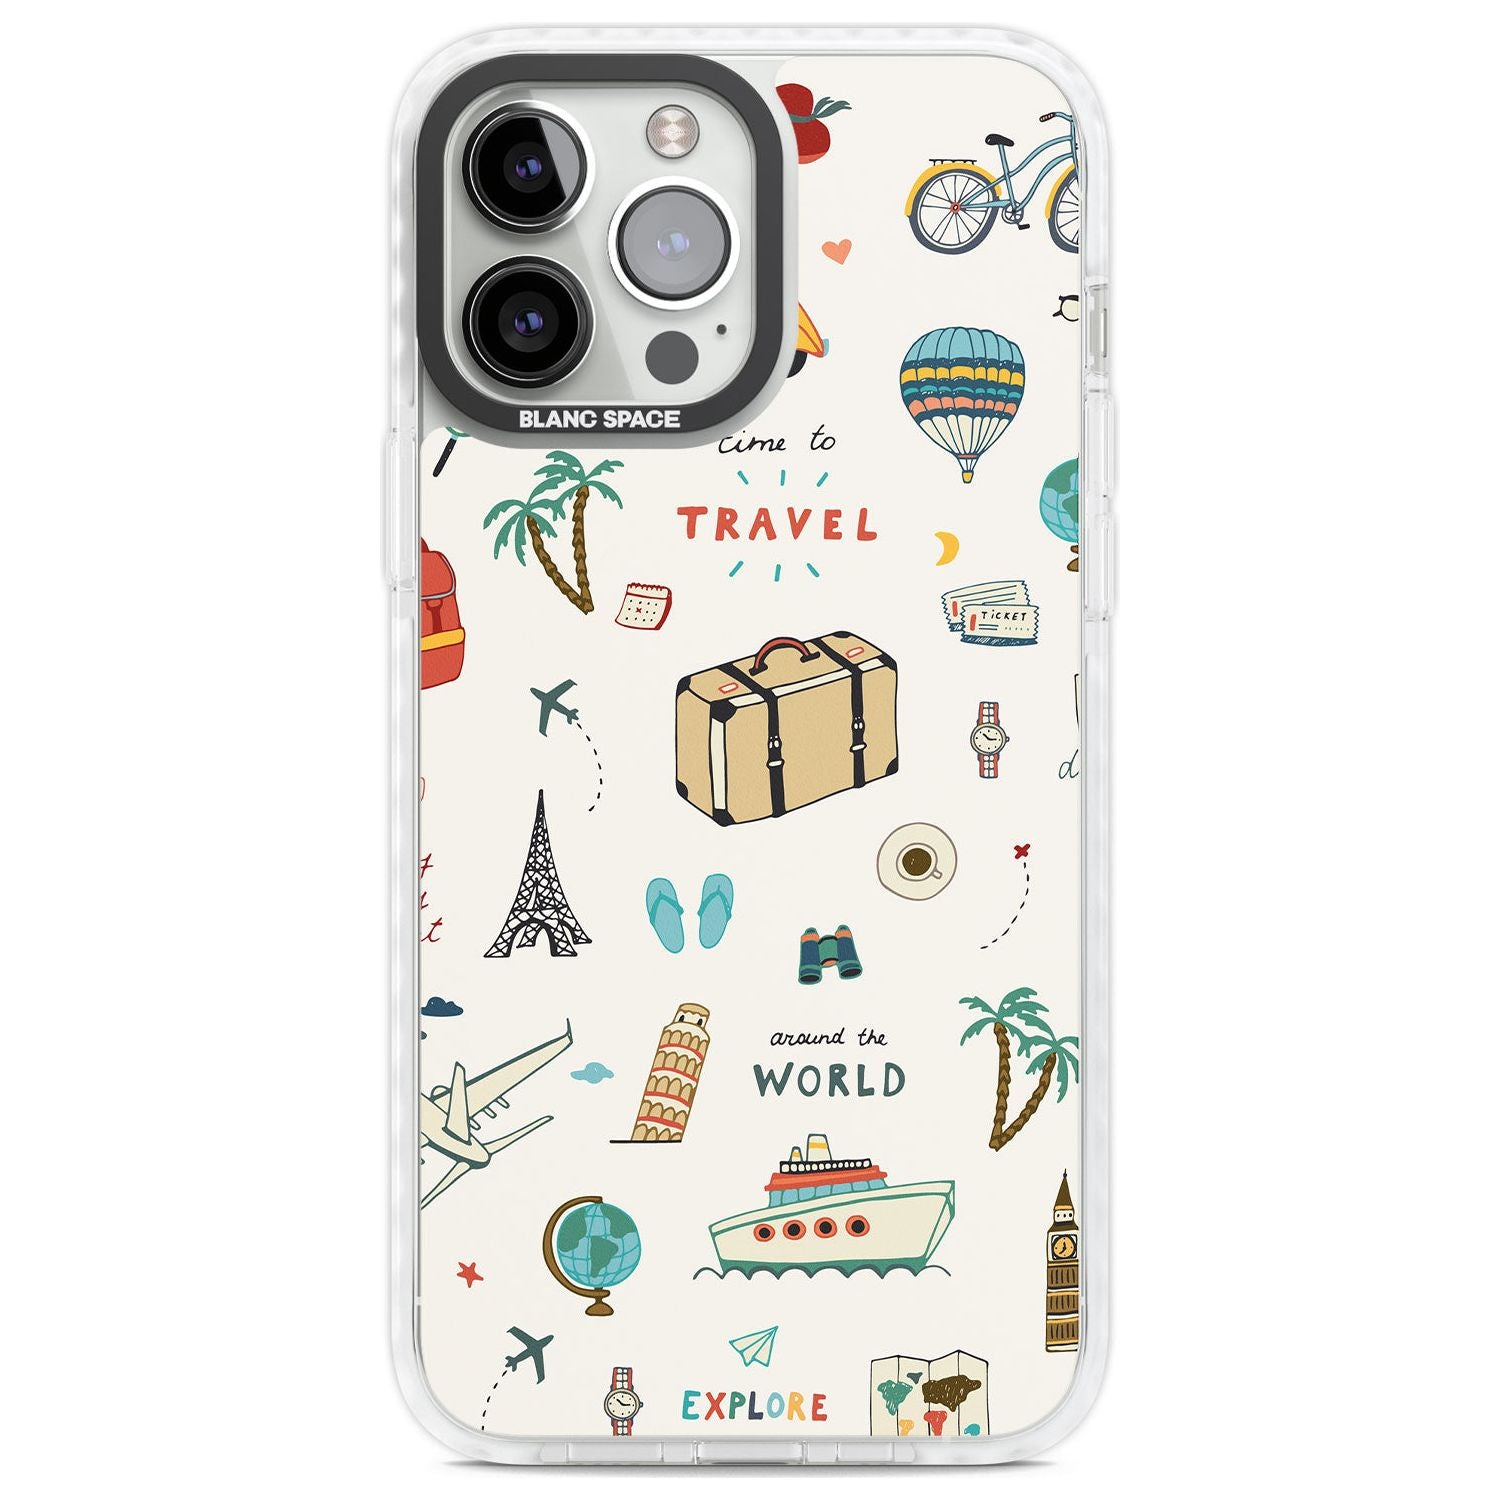 Cute Travel Pattern Cream Phone Case iPhone 13 Pro Max / Impact Case,iPhone 14 Pro Max / Impact Case Blanc Space